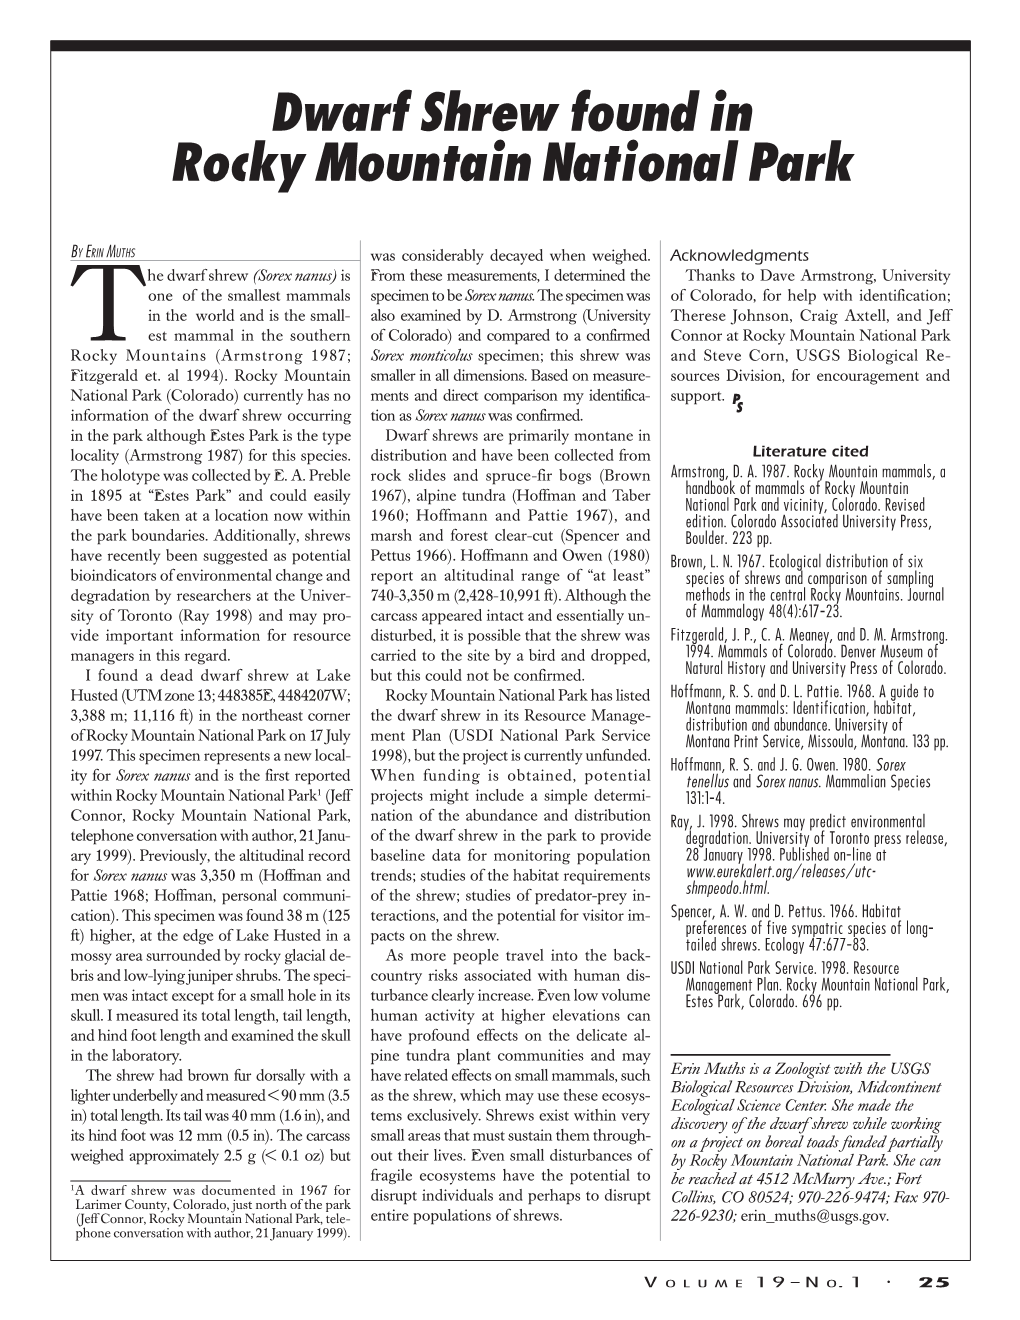 Dwarf Shrew Found in Rocky Mountain National Park